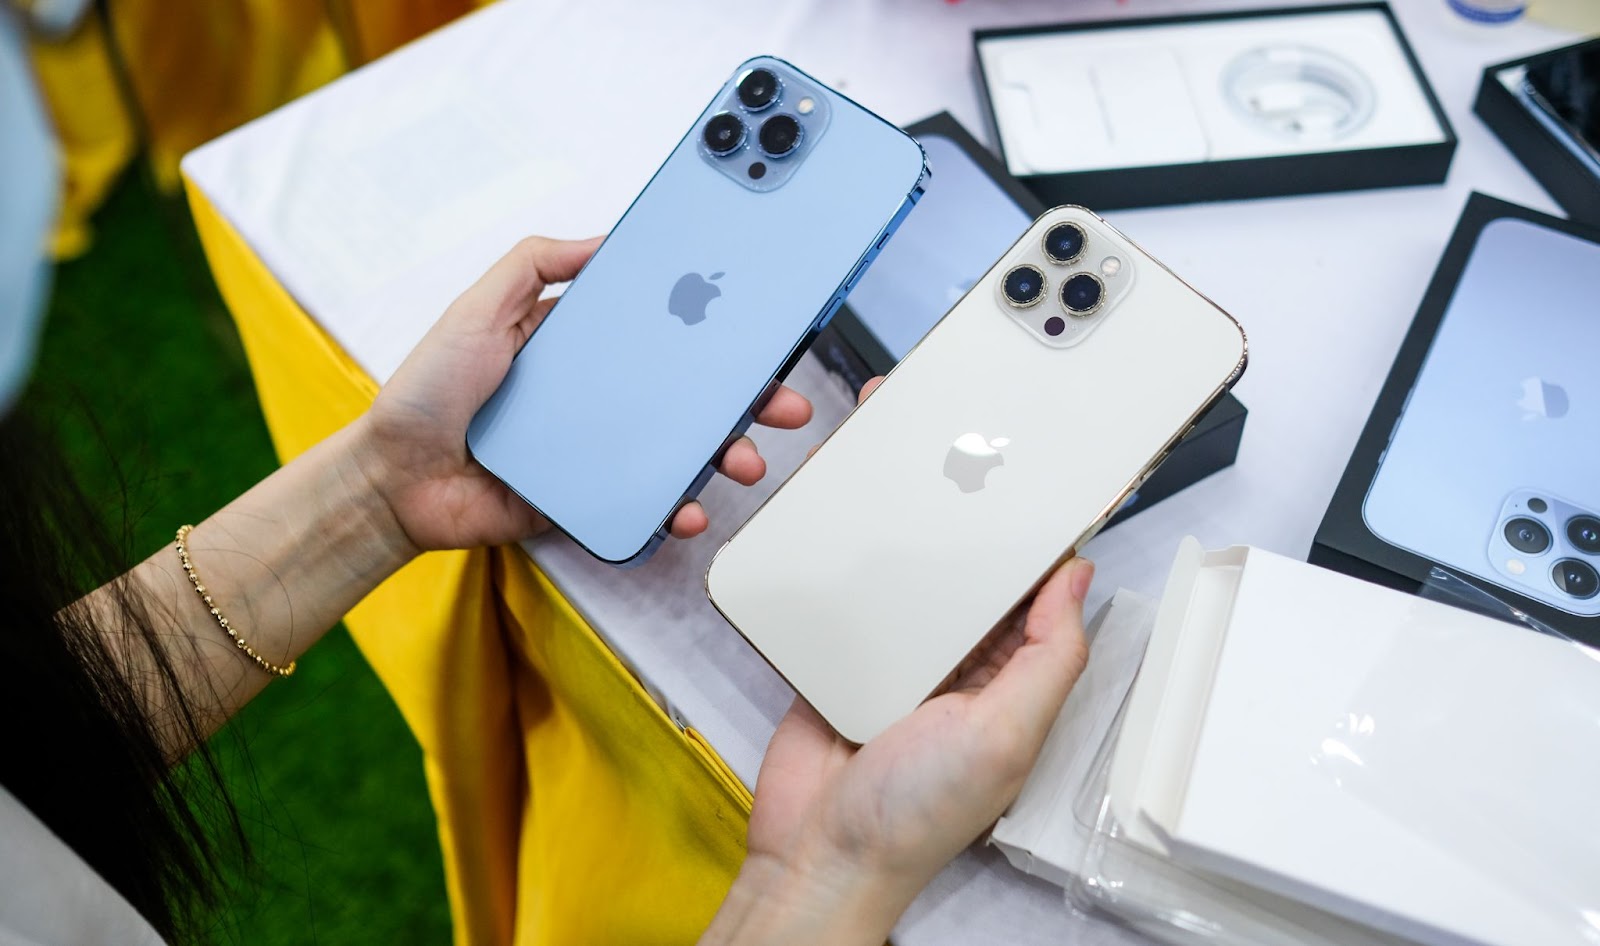 Người dùng Apple đang mong chờ ngày ra mắt iPhone 13 Pro Max và một tin vui đến từ hãng, sản phẩm sẽ được trang bị nhiều tính năng mới, hấp dẫn và độc đáo hơn. Hãy dành chút thời gian để khám phá những tính năng ấn tượng của chiếc điện thoại này.